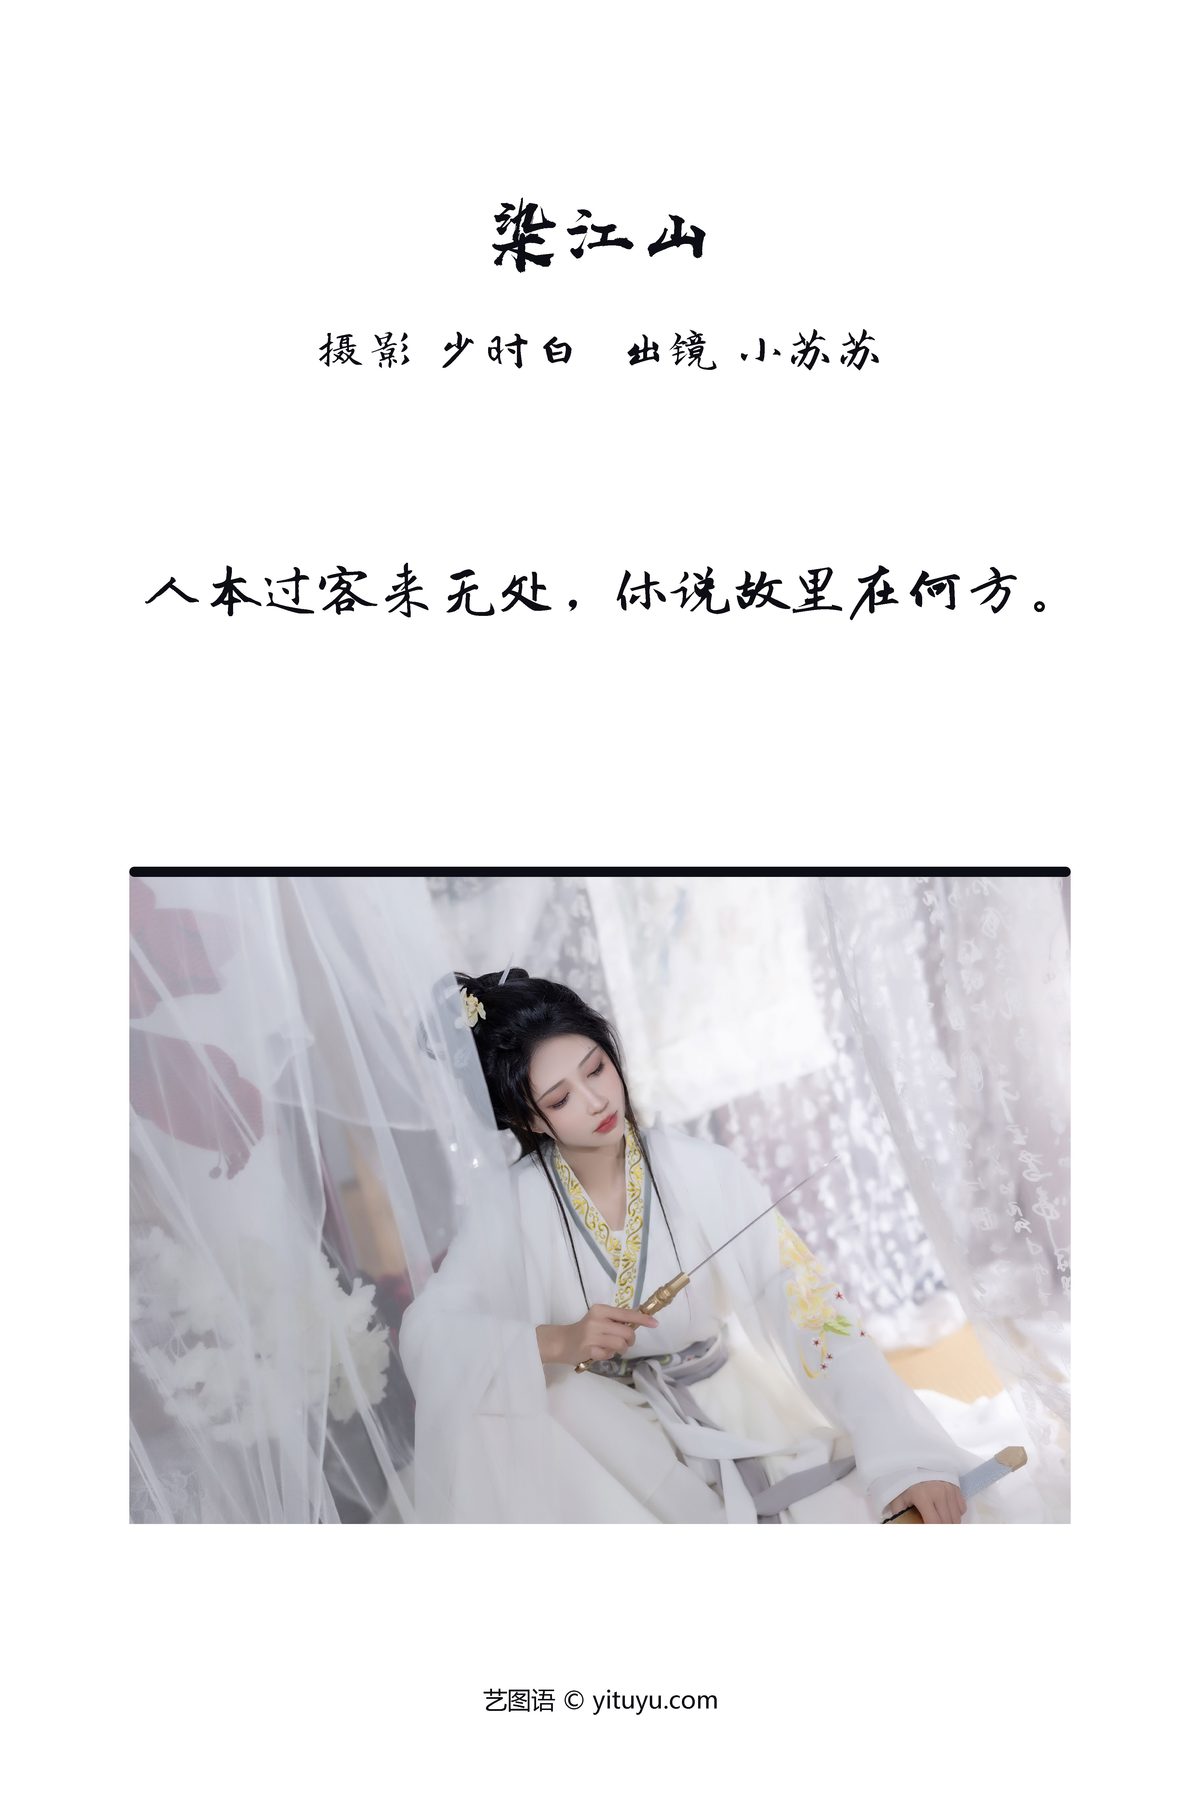 YiTuYu艺图语 Vol 3755 Qi Luo Sheng De Xiao Su Su 0002 4353765656.jpg